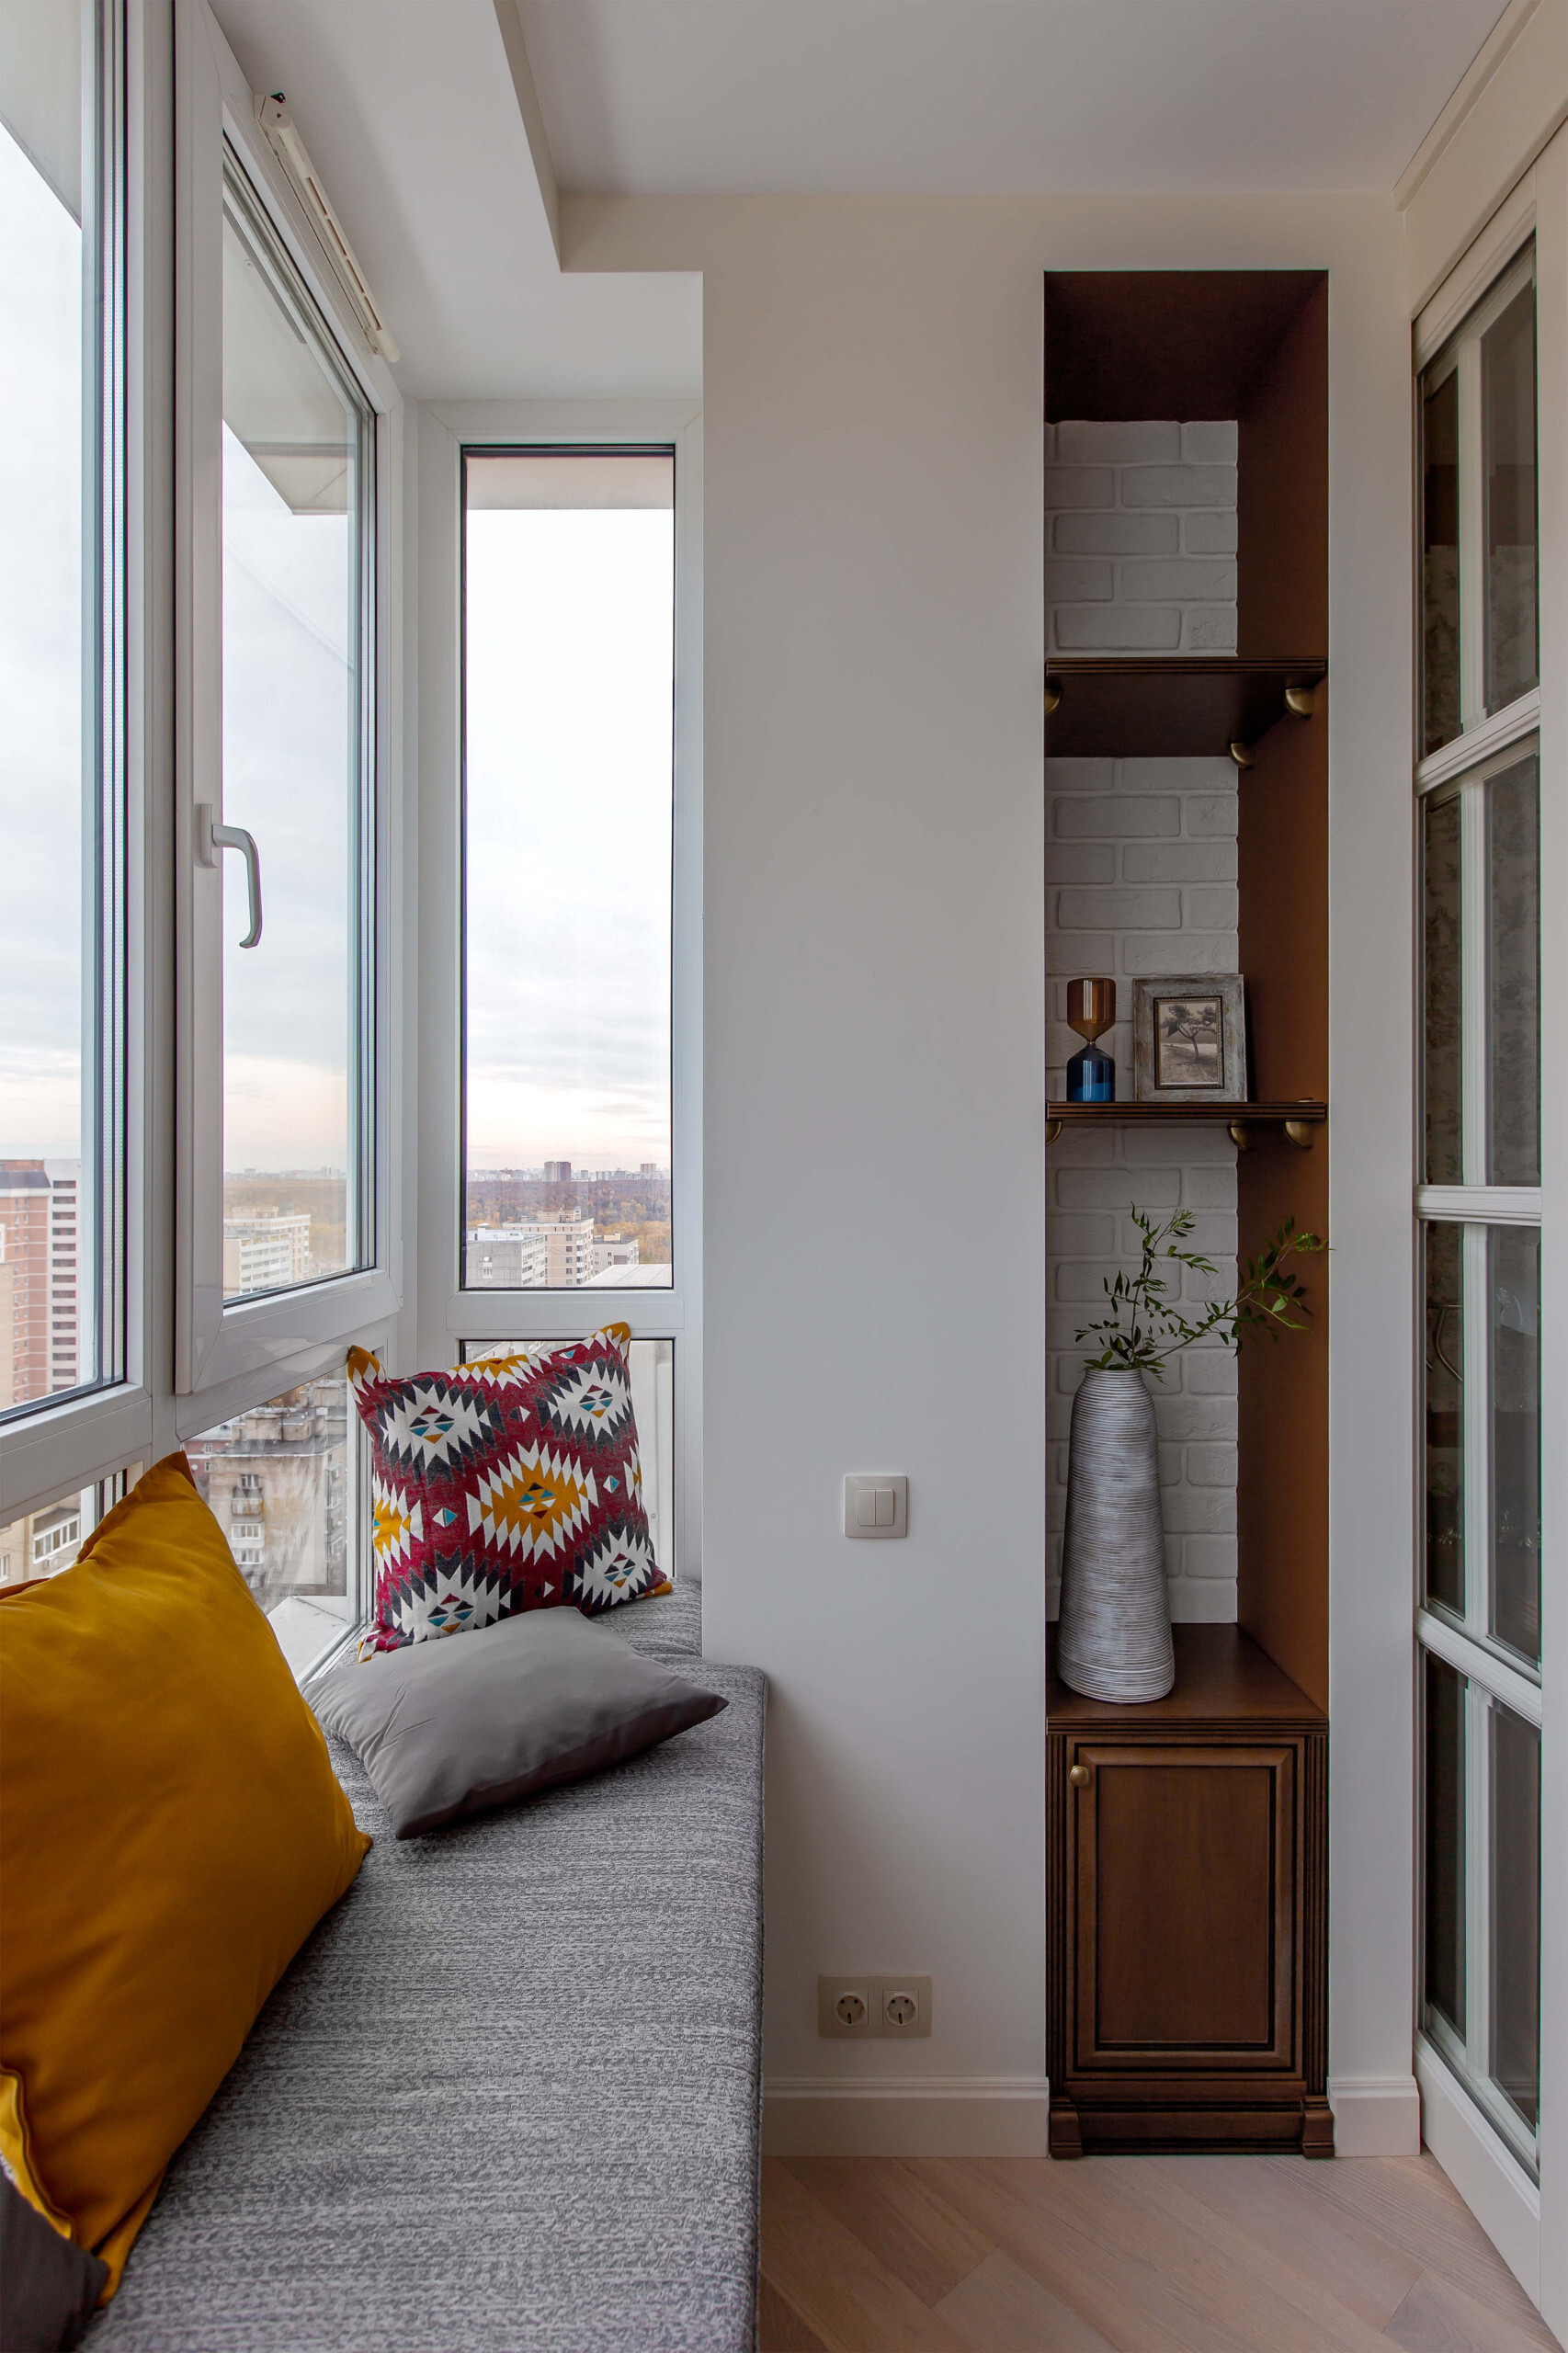 Интерьер балкона с окном, без окна, балконом, панорамными окнами и угловым окном в ретро